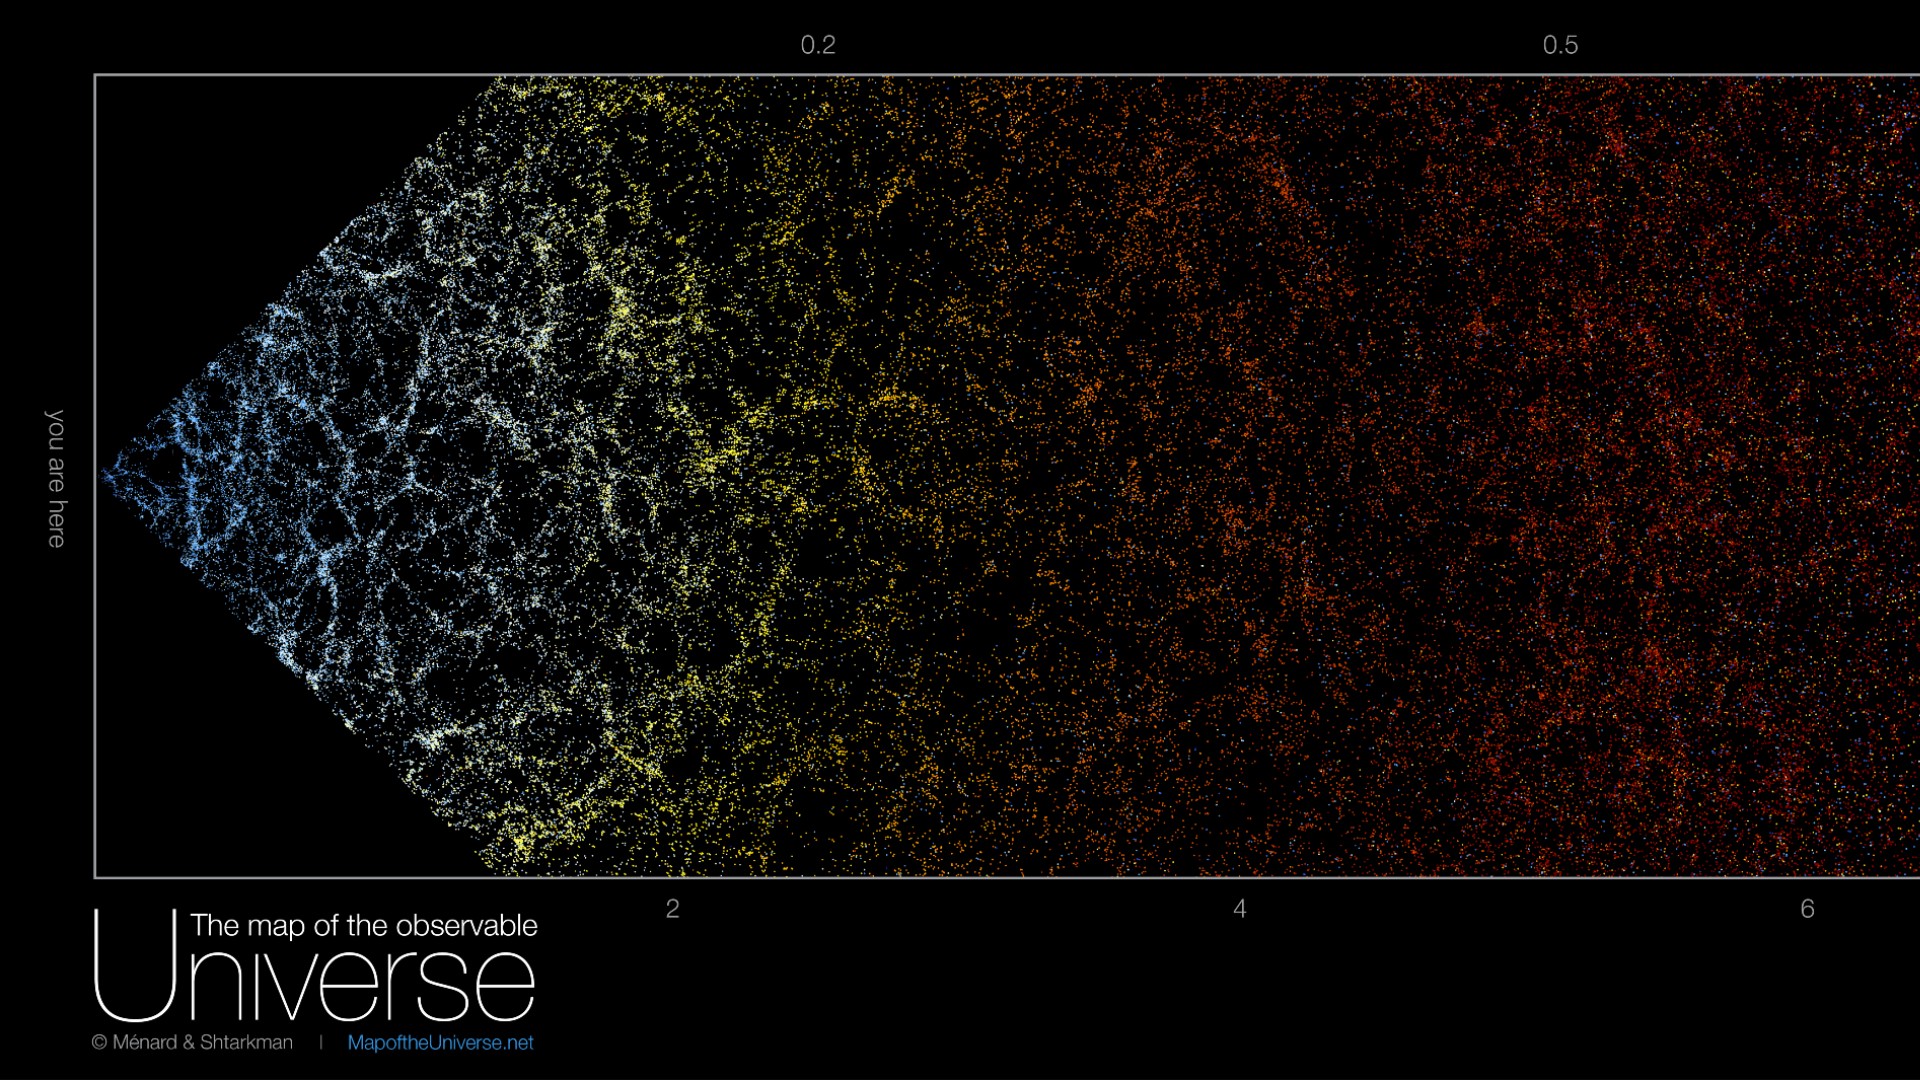 Dit is een geweldige interactieve kaart van het zichtbare universum